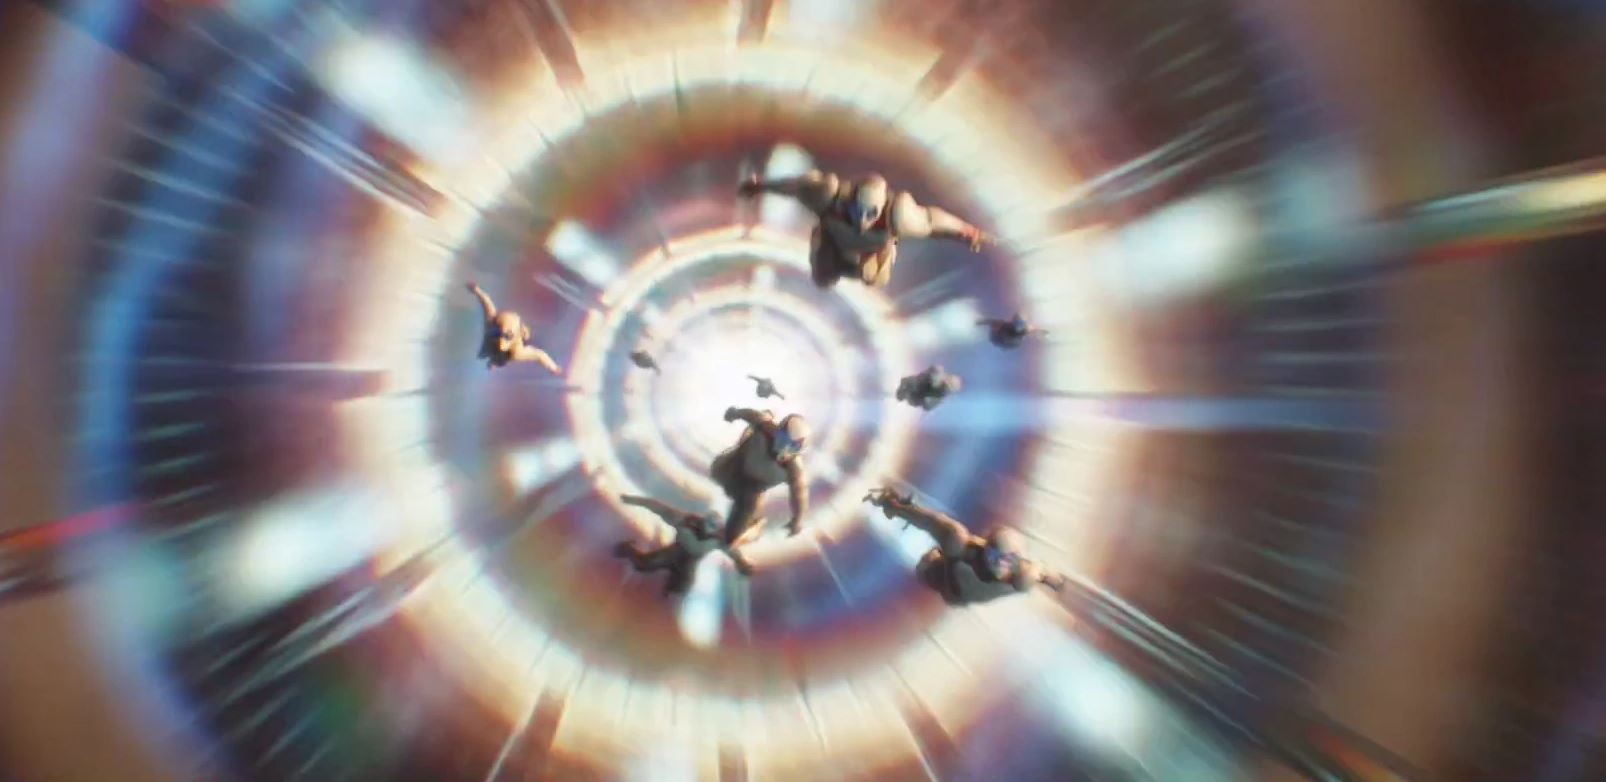 Giải mã giao kèo giữa Ant-Man với ác nhân Kang trong bom tấn Quantumania - Ảnh 4.